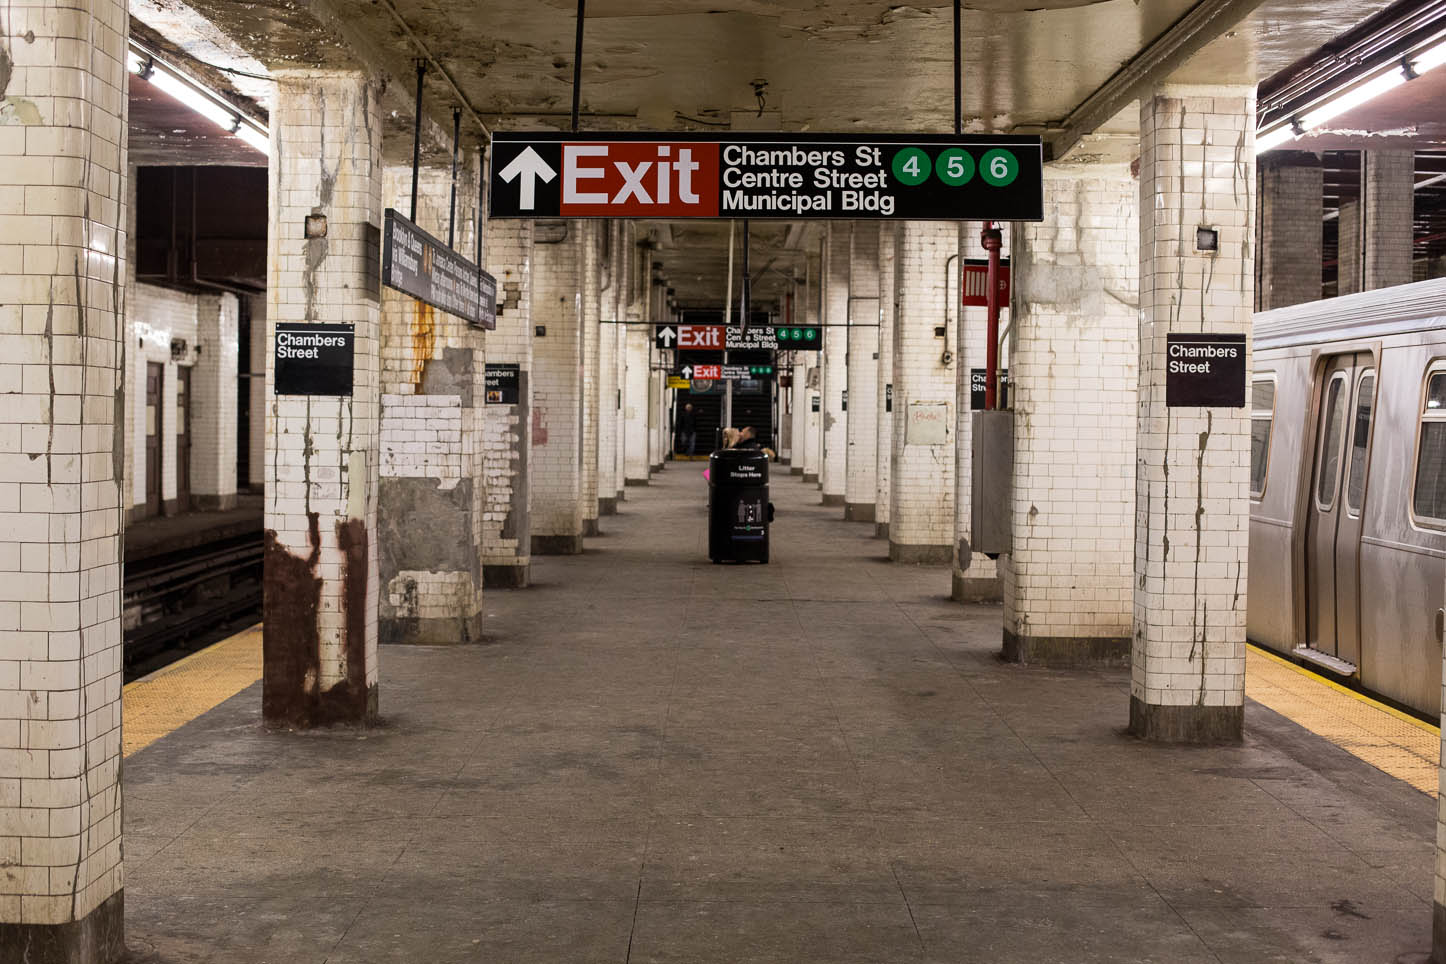  New York City, Subway 